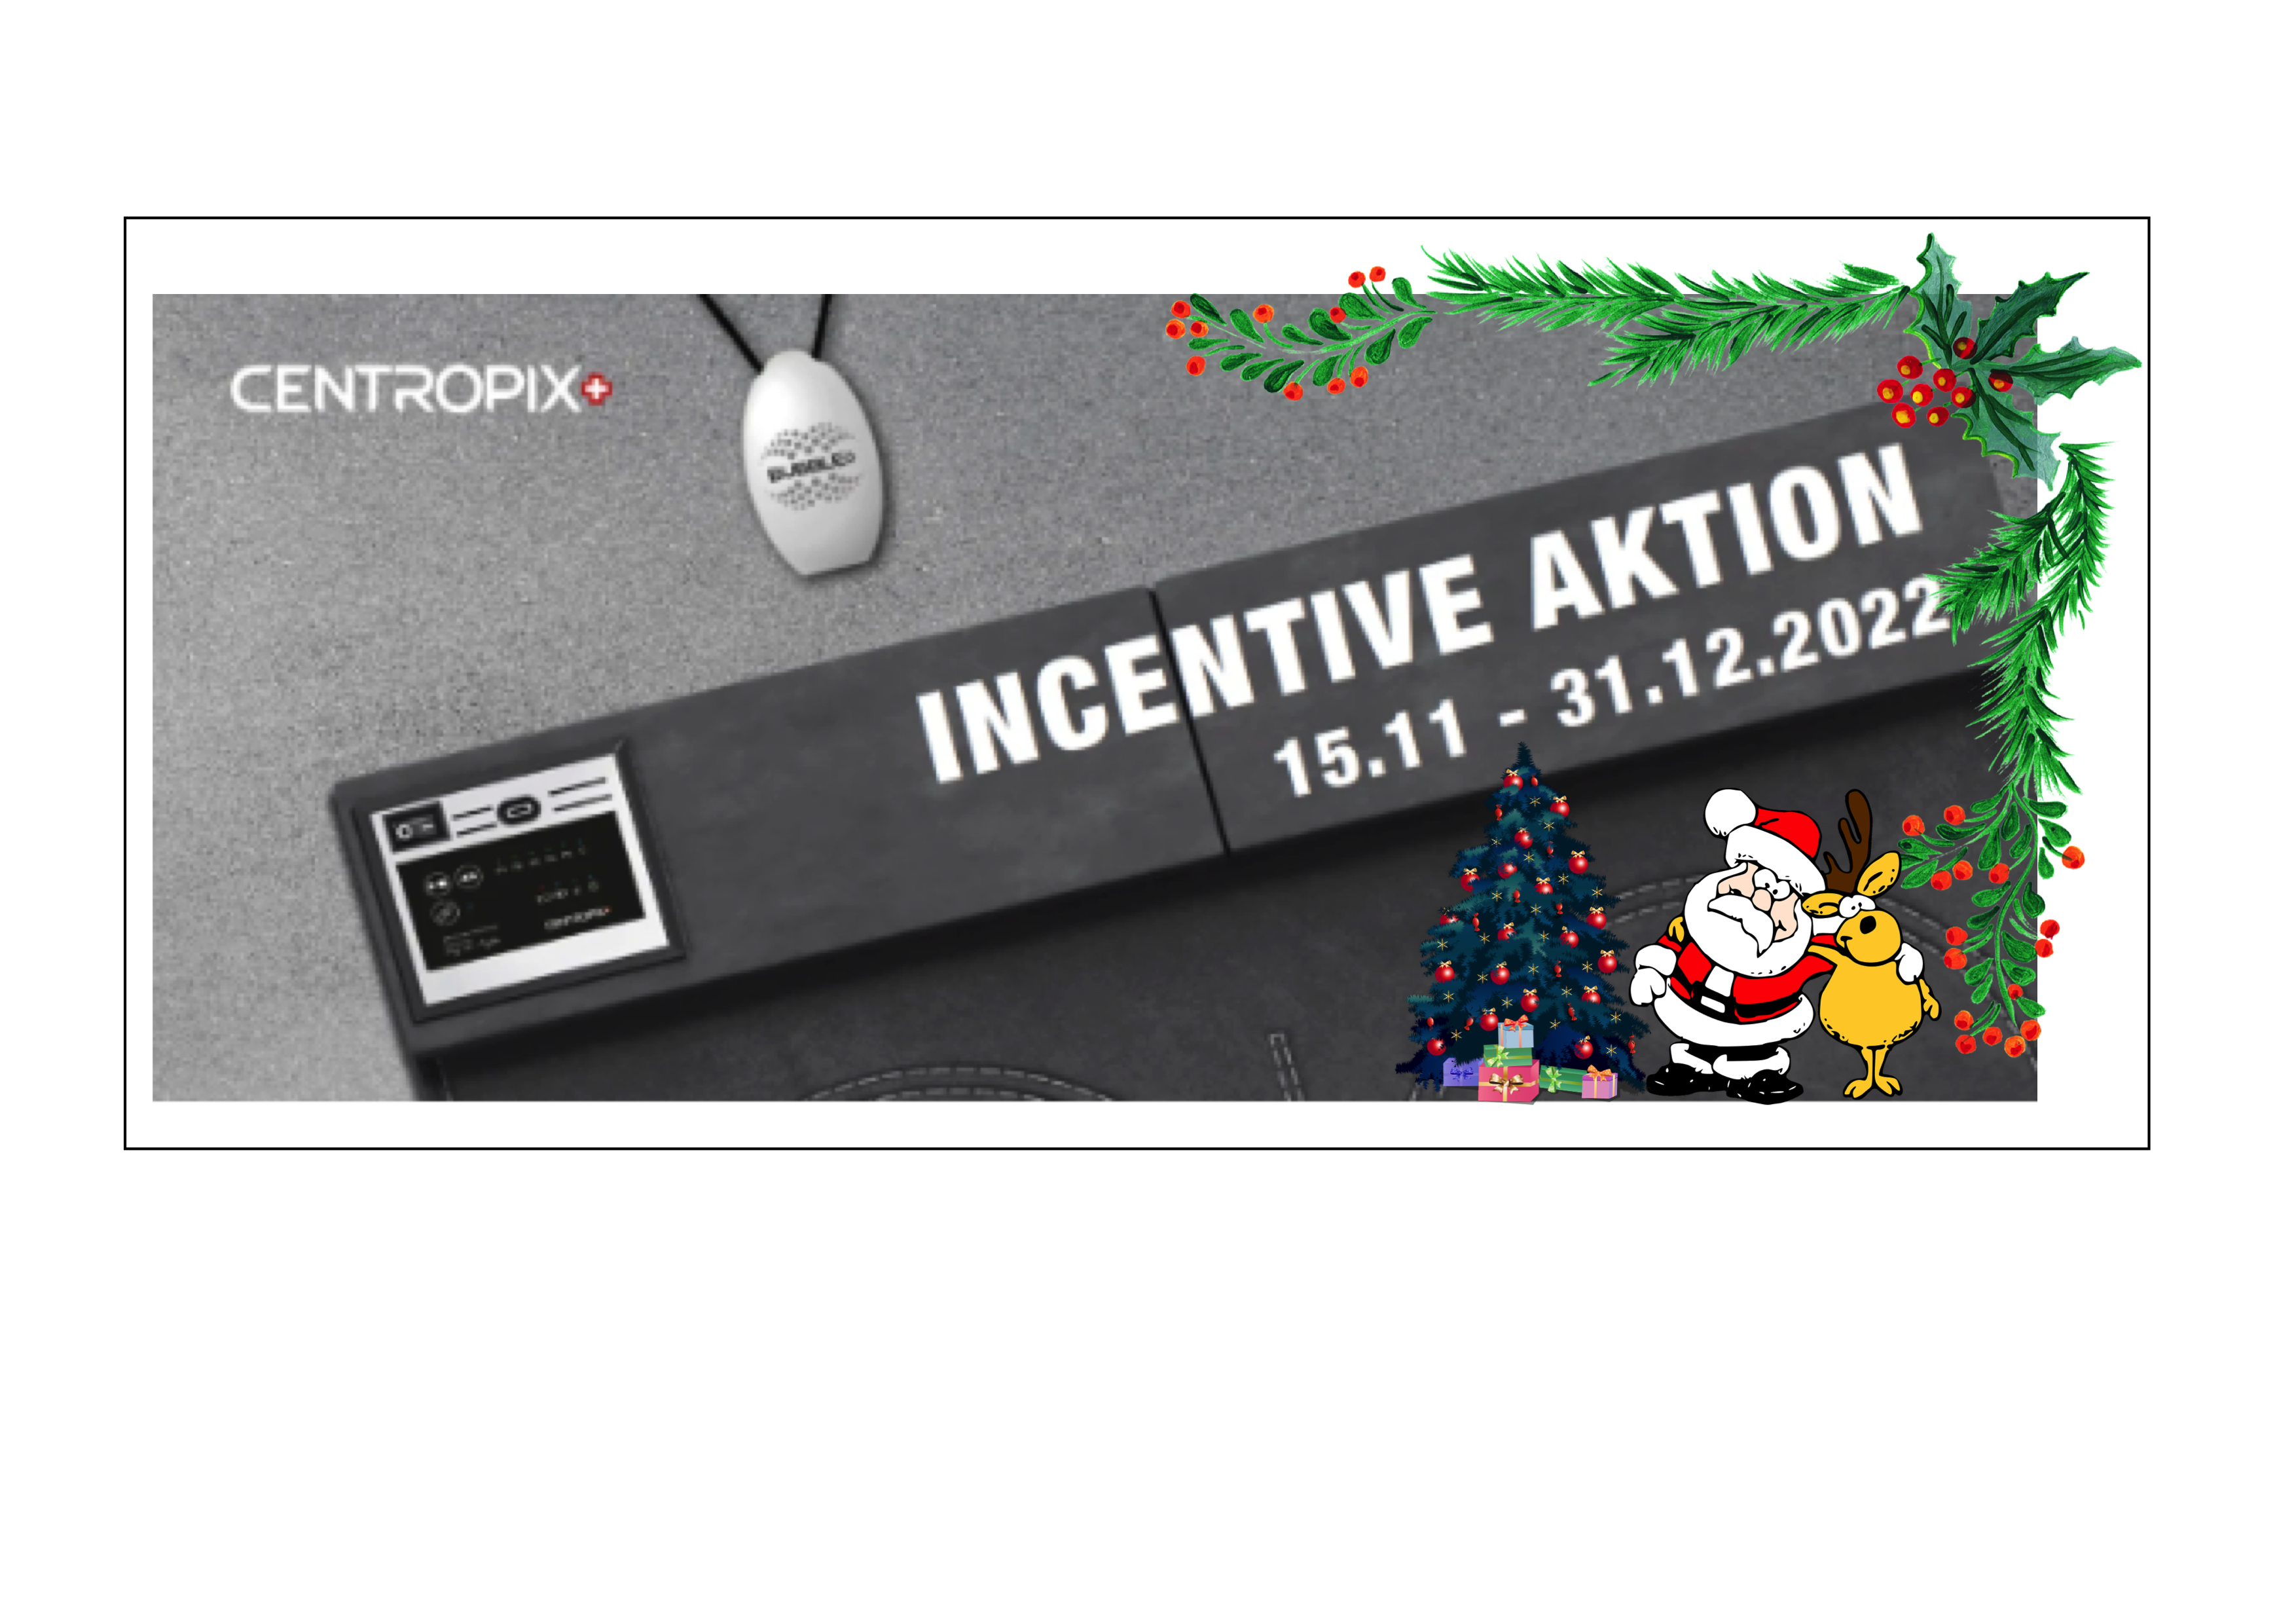 Centropix Incentive Aktion 2022